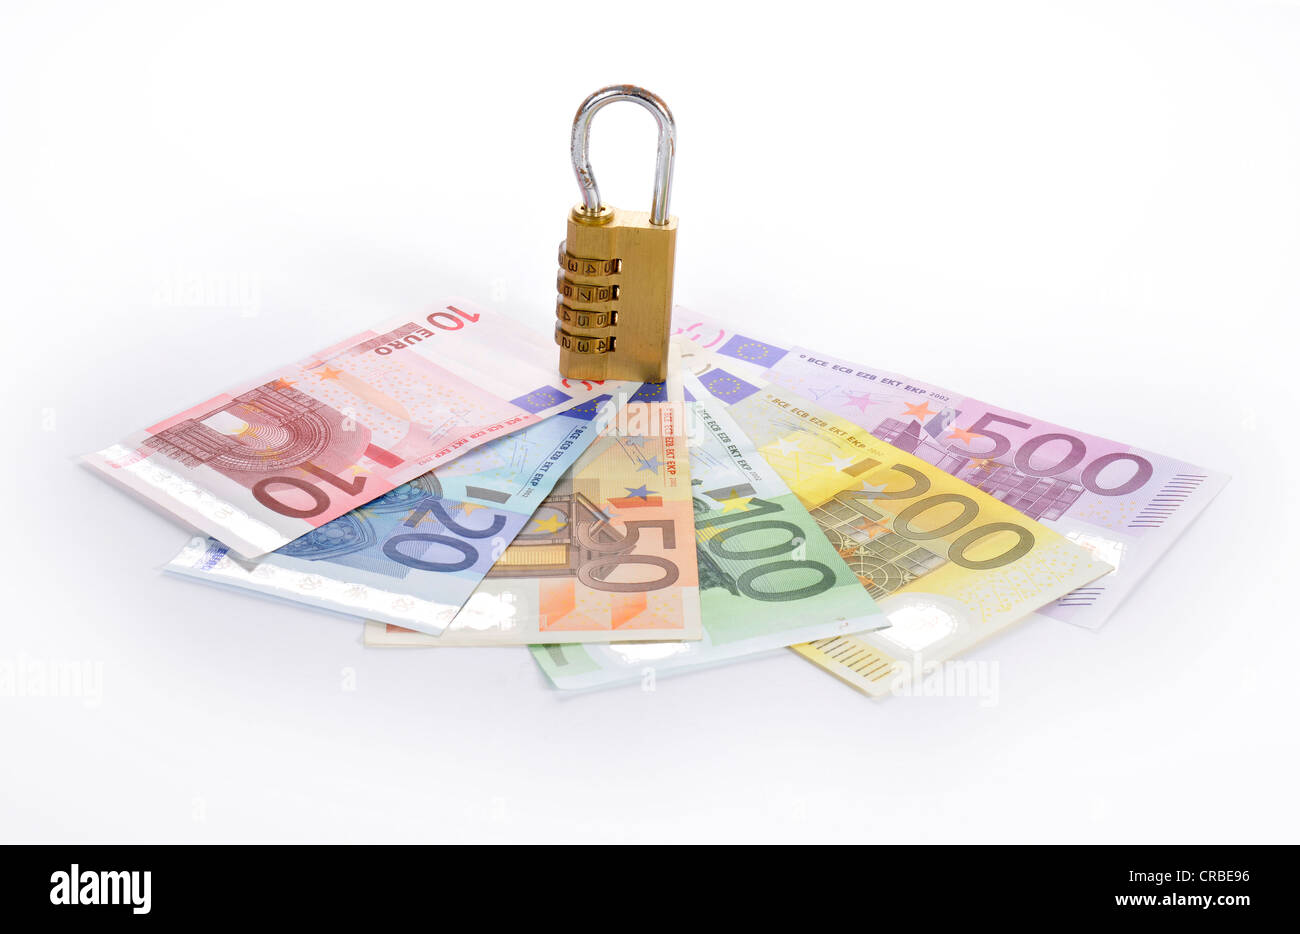 Combination lock on euro banknotes, symbolic image of monetary security Stock Photo